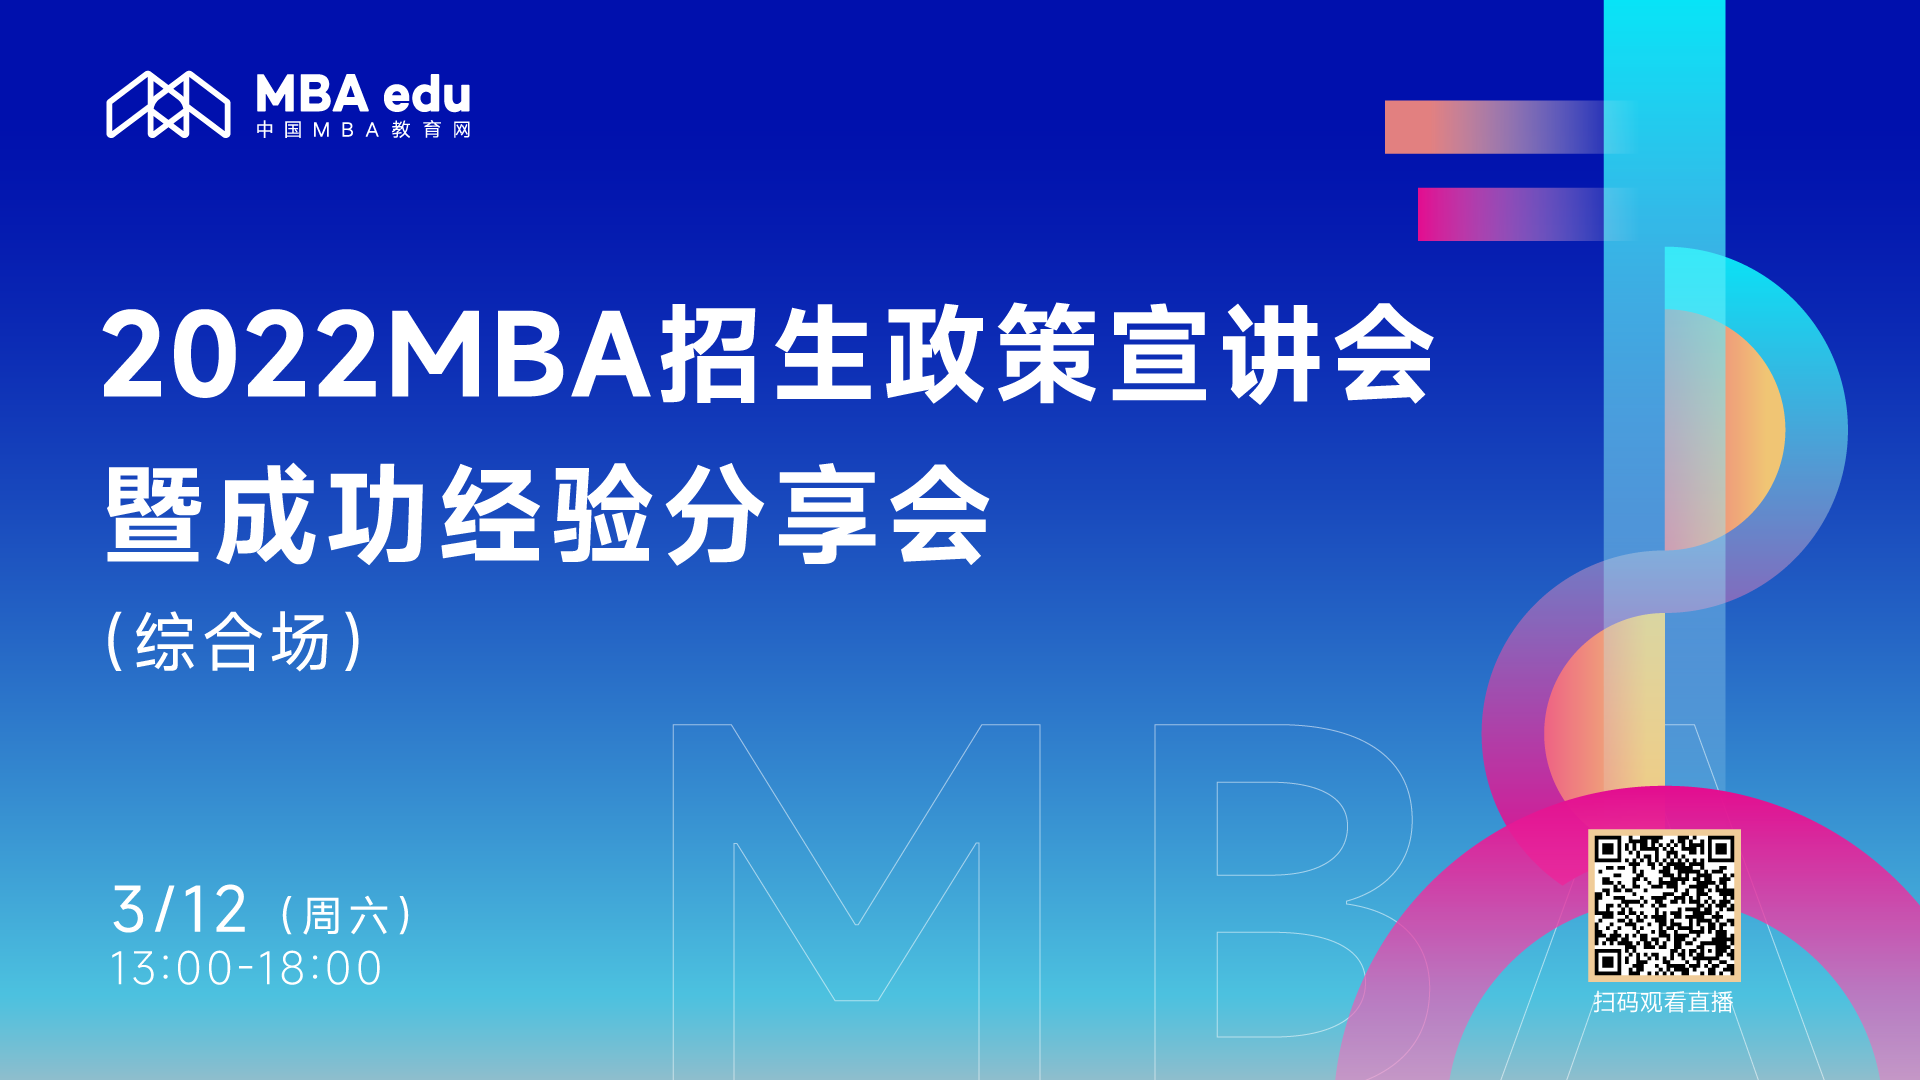 第三场 | 【3月12日】2022MBA招生政策宣讲会暨成功经验分享会 （综合场）